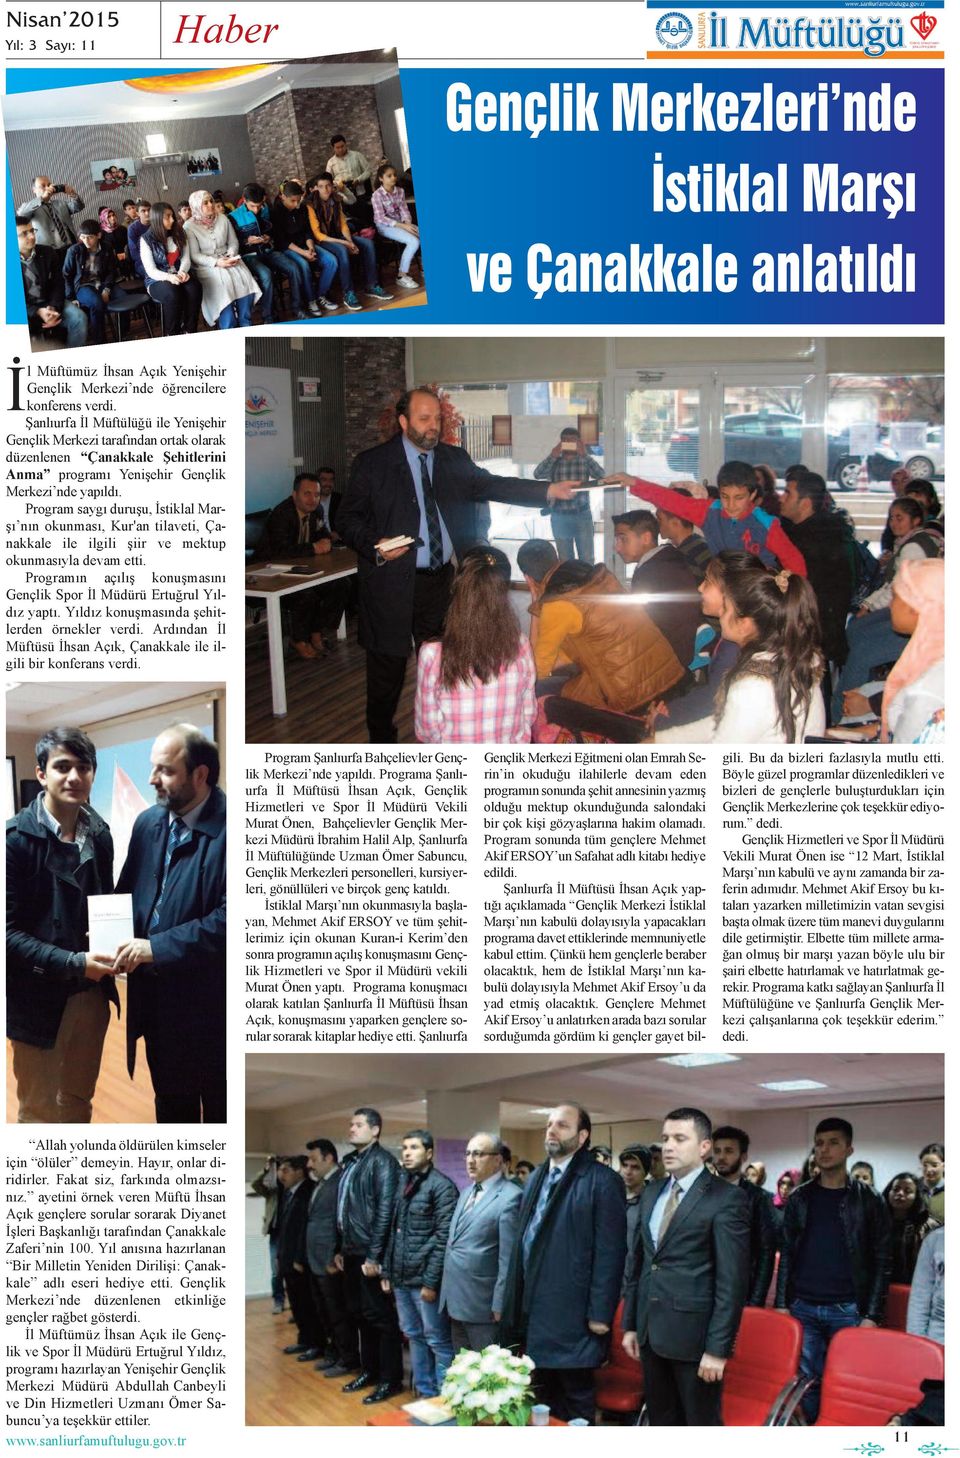 Program saygı duruşu, İstiklal Marşı nın okunması, Kur'an tilaeti, Çanakkale ile ilgili şiir e mektup okunmasıyla deam etti. Programın açılış konuşmasını Gençlik Spor İl Müdürü Ertuğrul Yıldız yaptı.